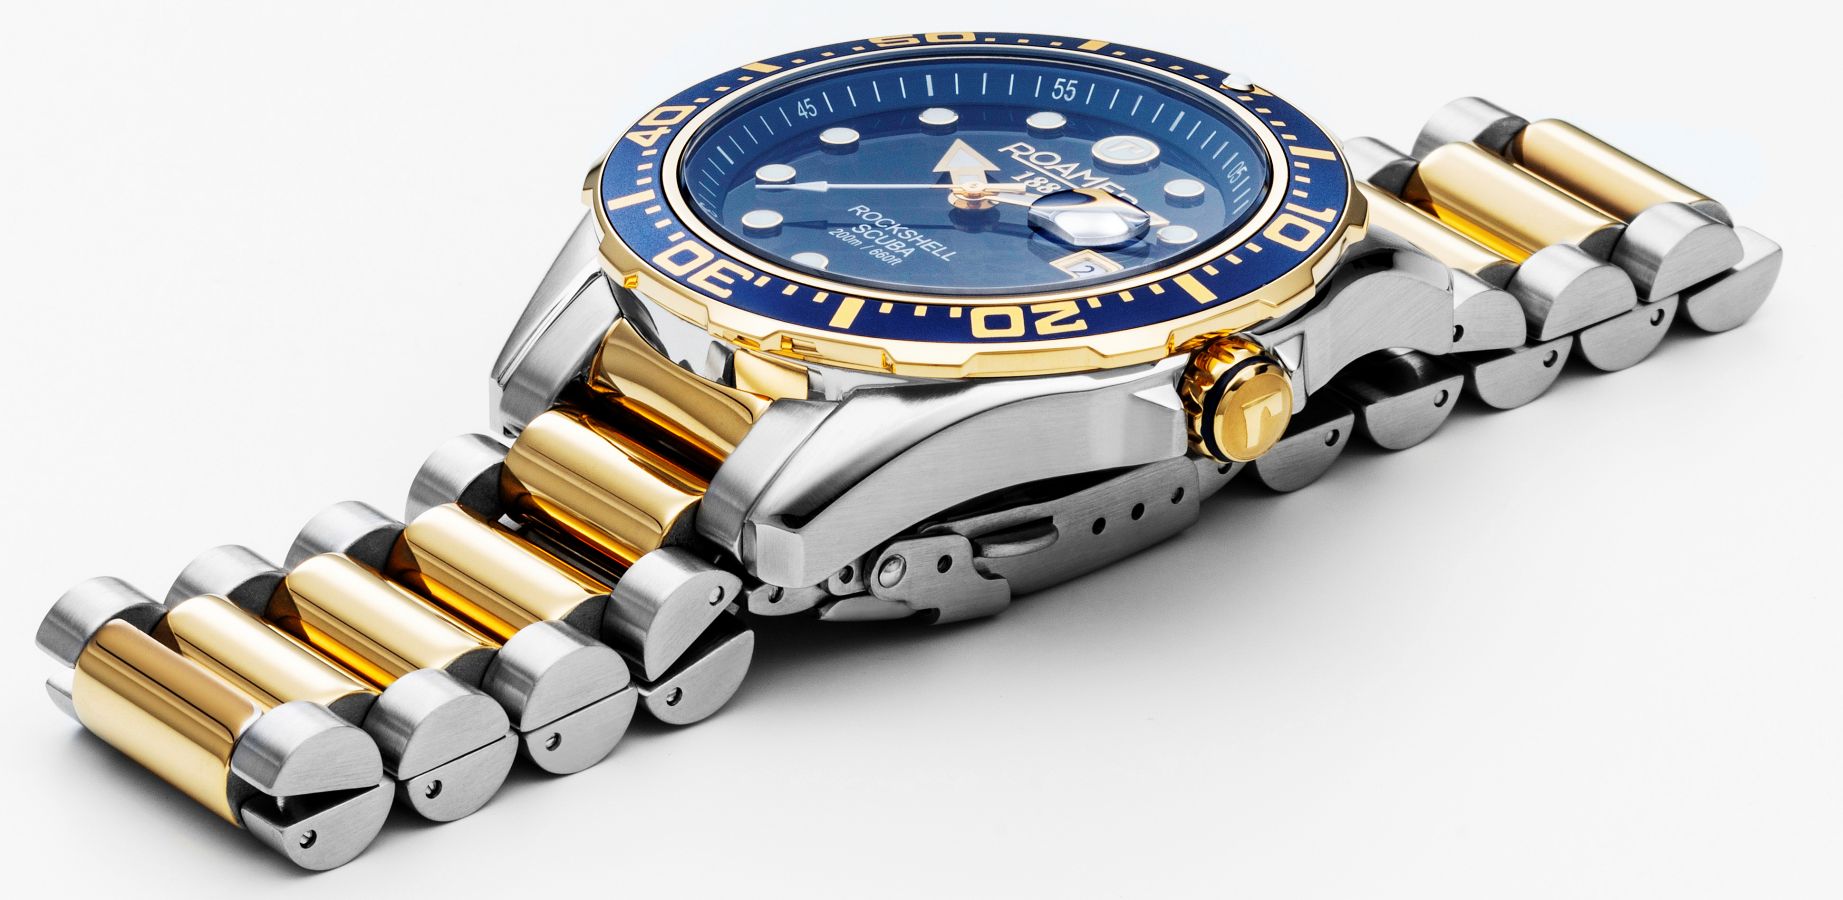 Roamer Rockshell Mark III Scuba - duży, sportowy zegarek. Typowy diver